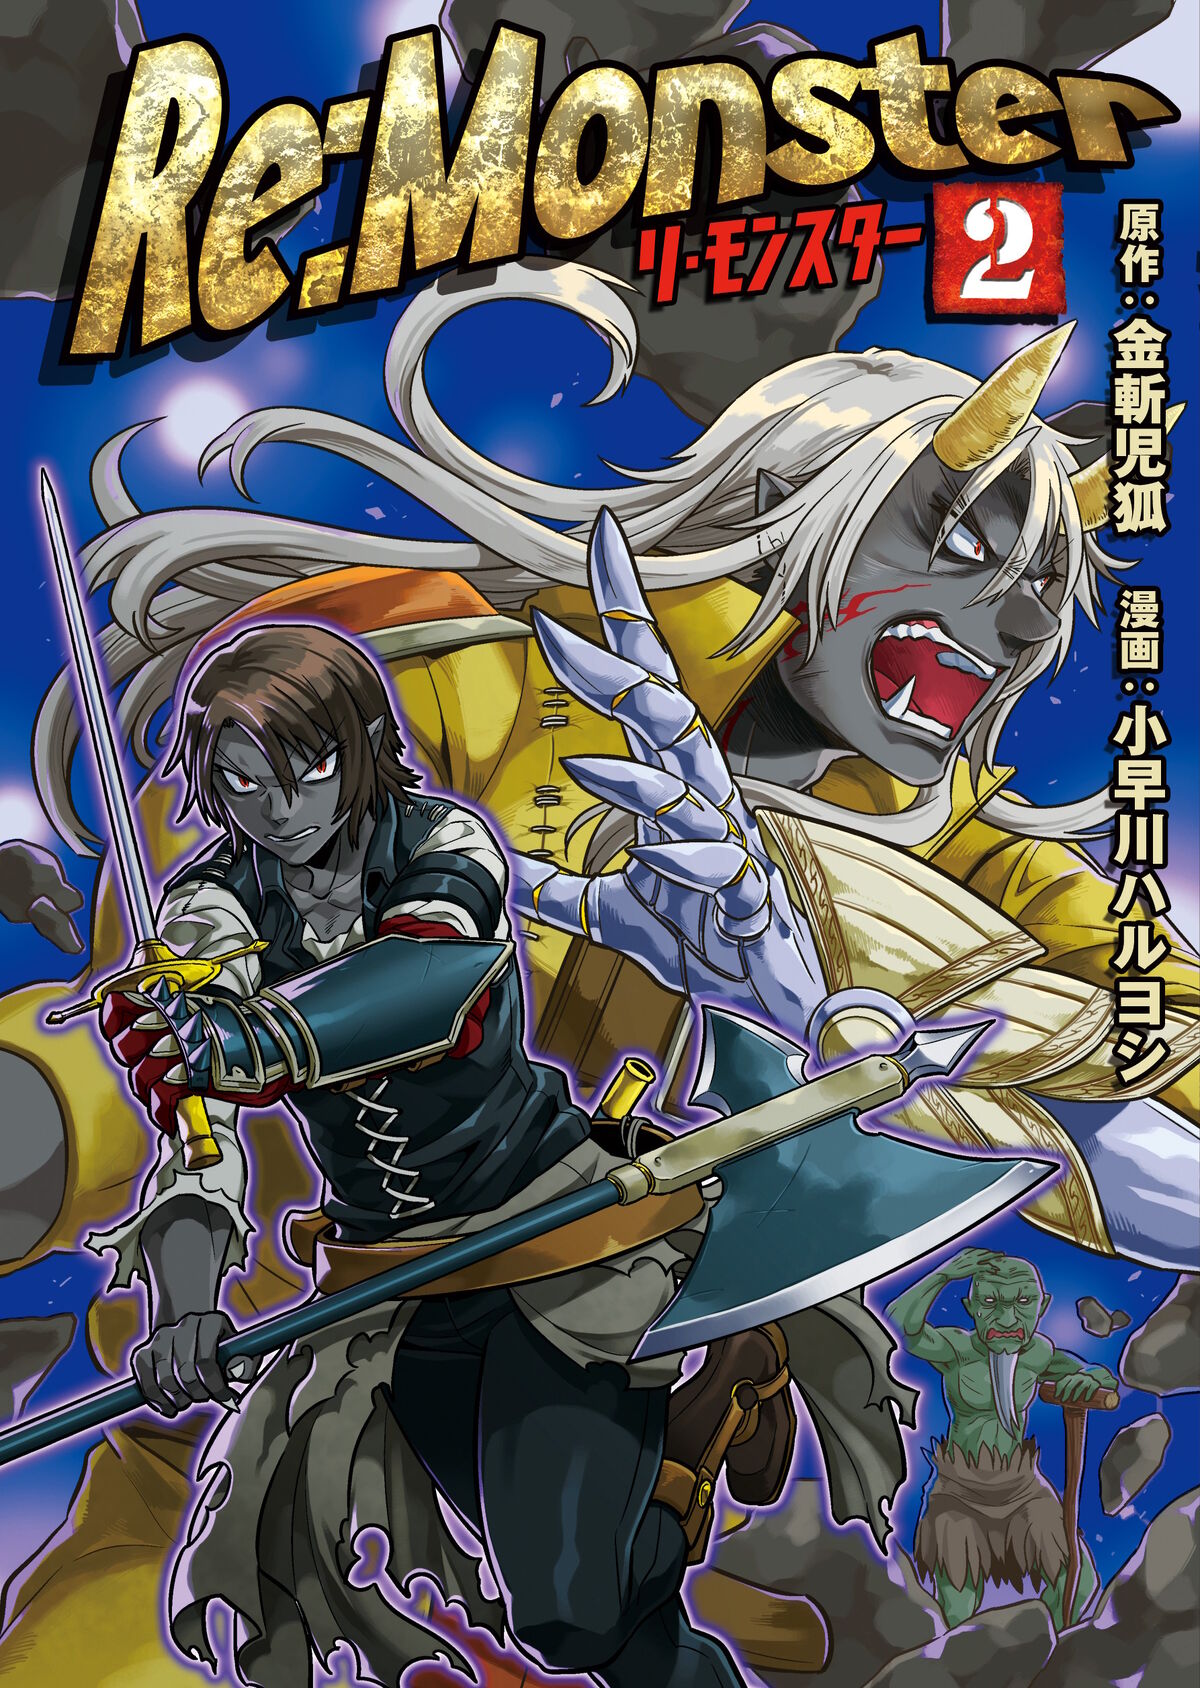 Manga Volume 2 | Re:Monster Wiki | Fandom